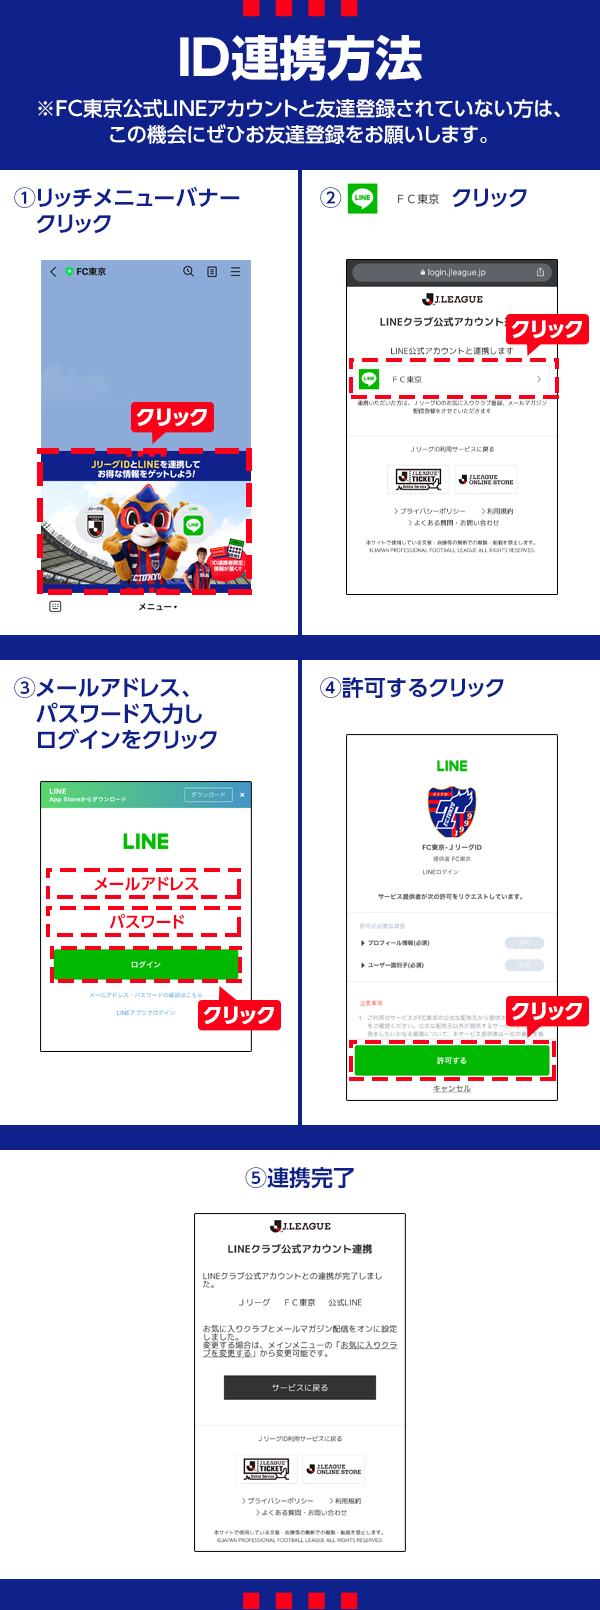 Jリーグid Line 連携キャンペーン実施のお知らせ ニュース Fc東京オフィシャルホームページ